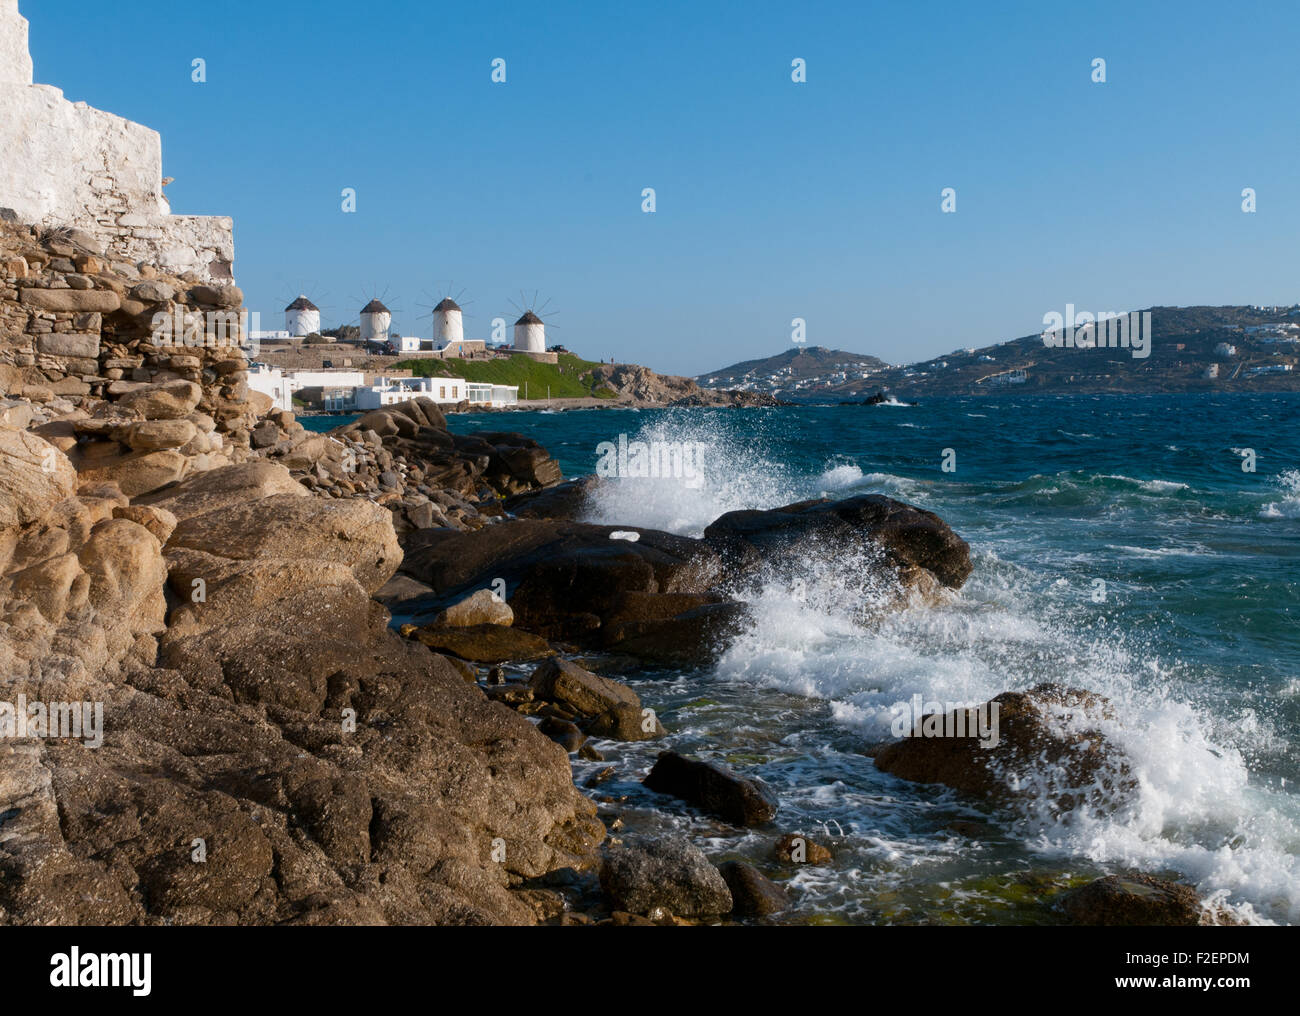 Waves breaking on rocky shore of Greek island of Mykonos, Cyclades Stock Photo